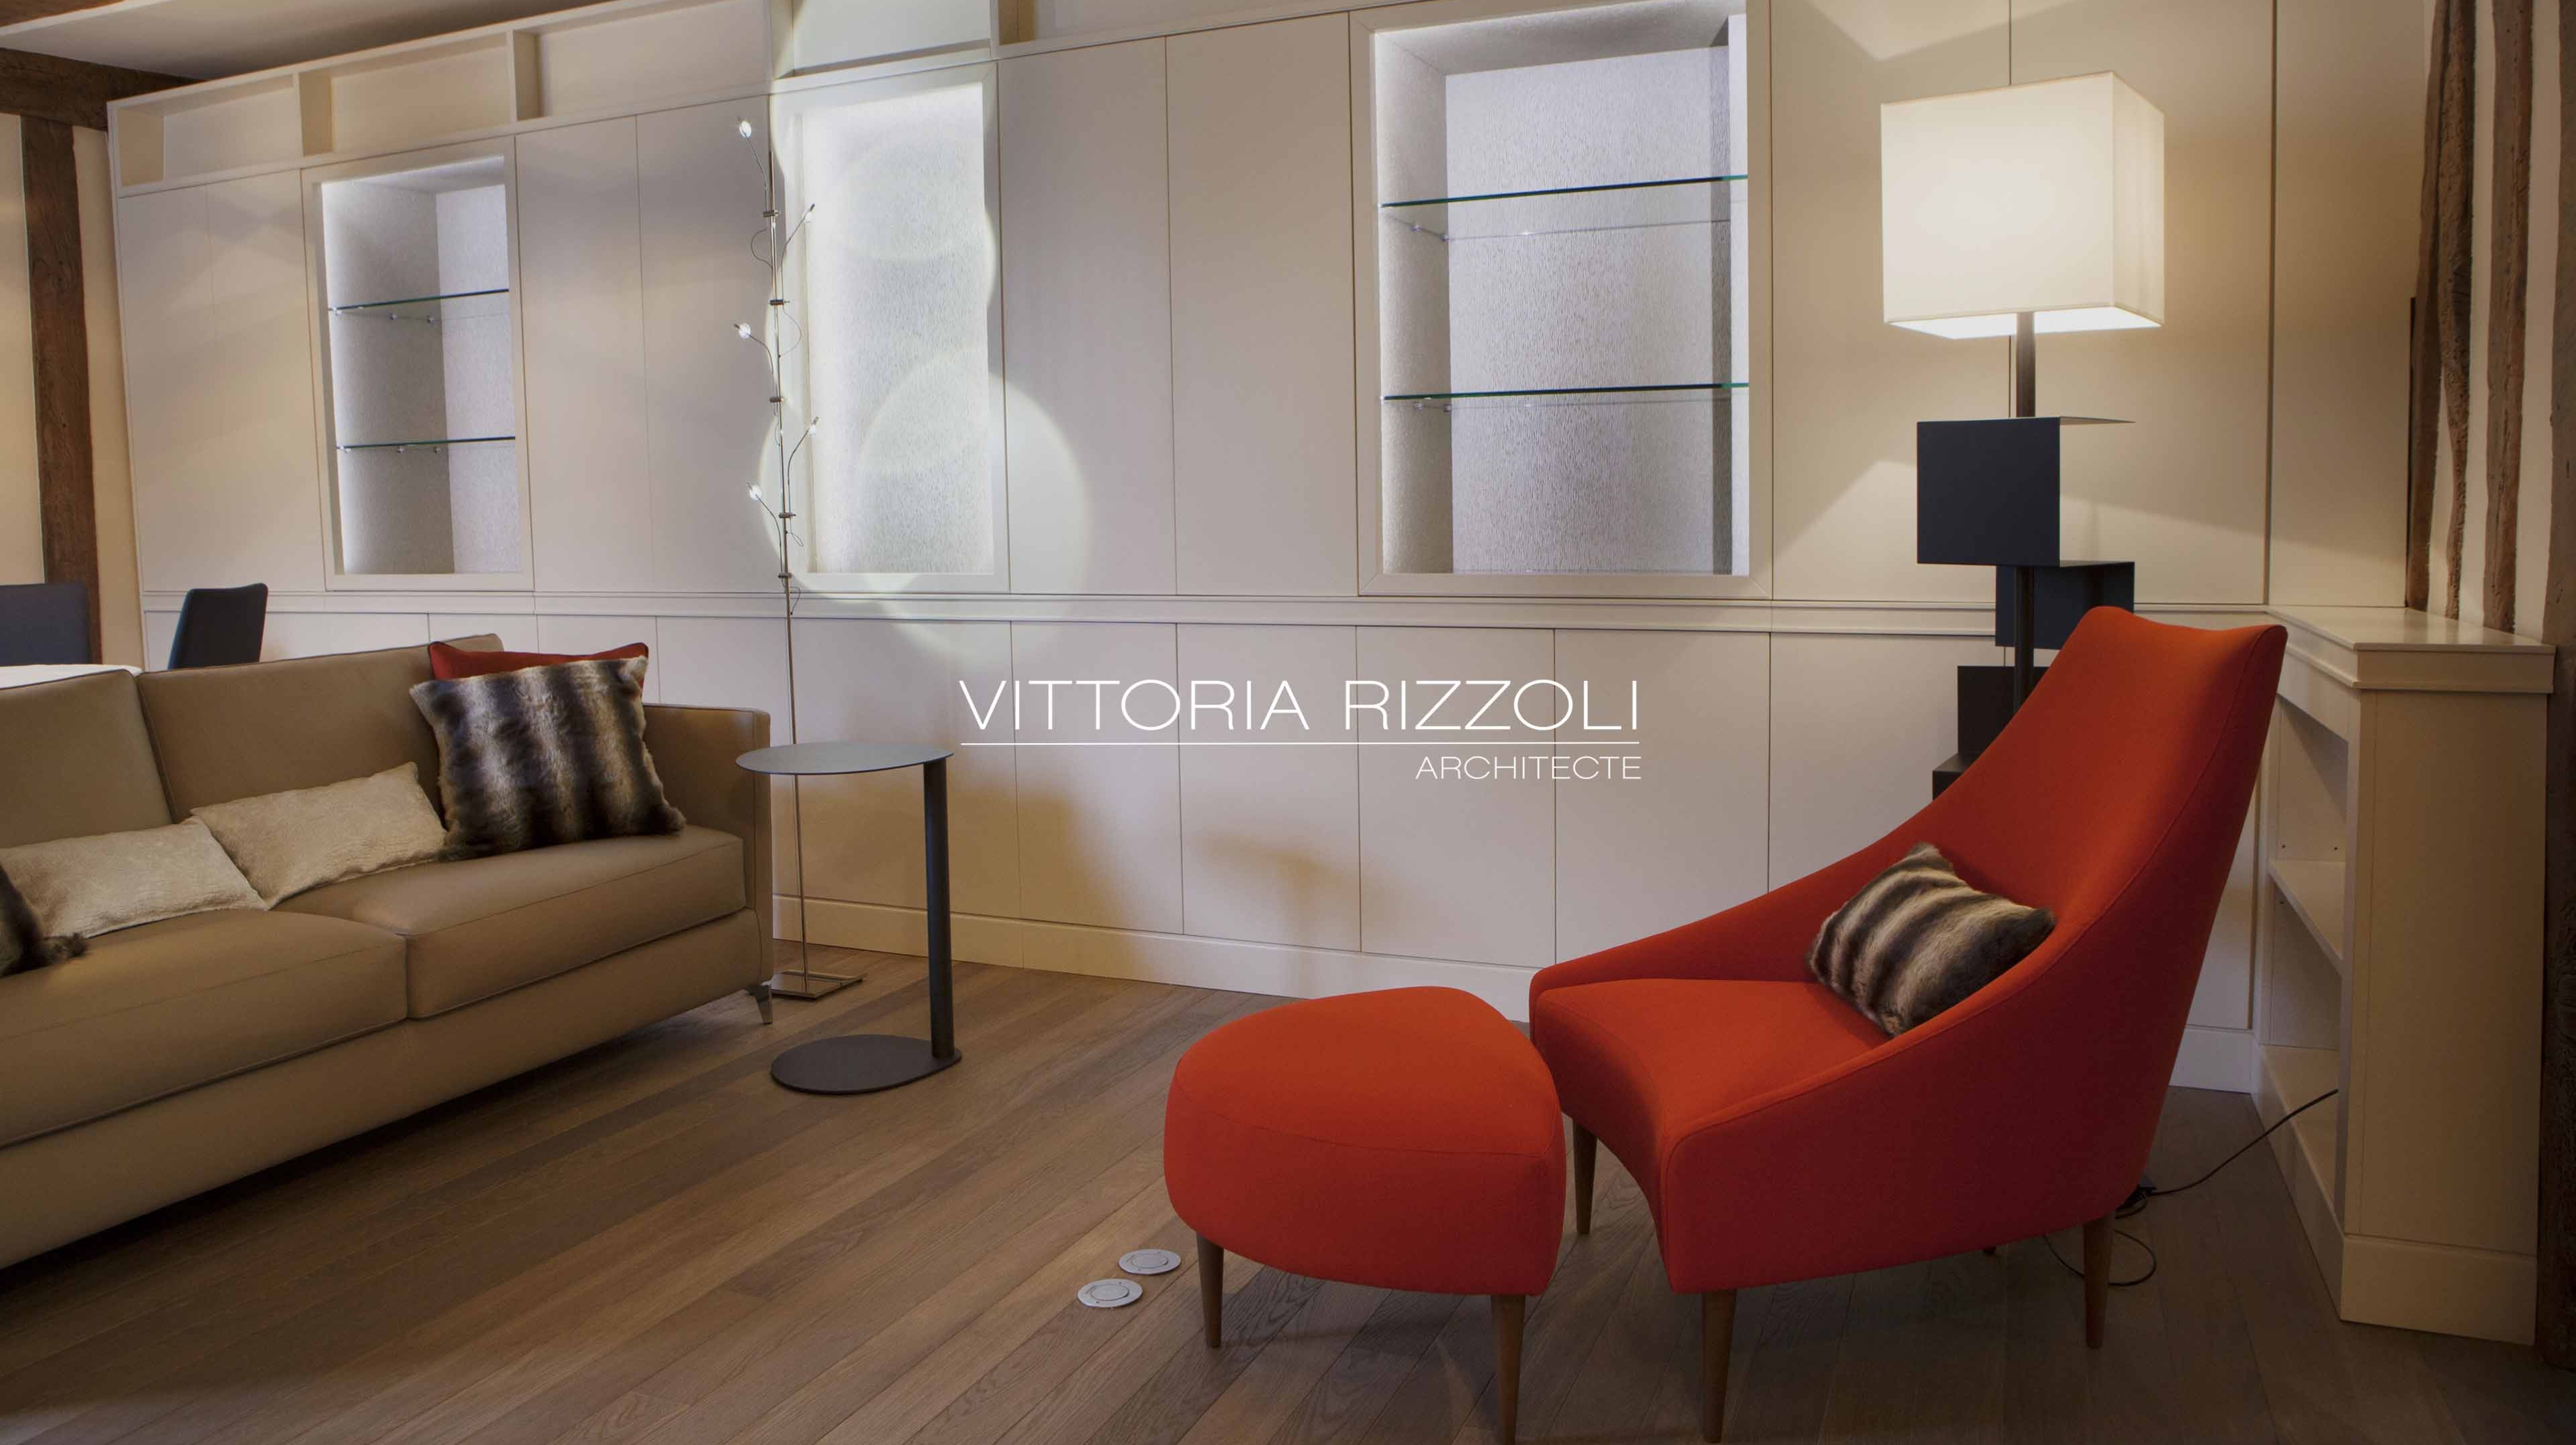 Vittoria Rizzoli architecte décoration d'intérieur rénovation appartement